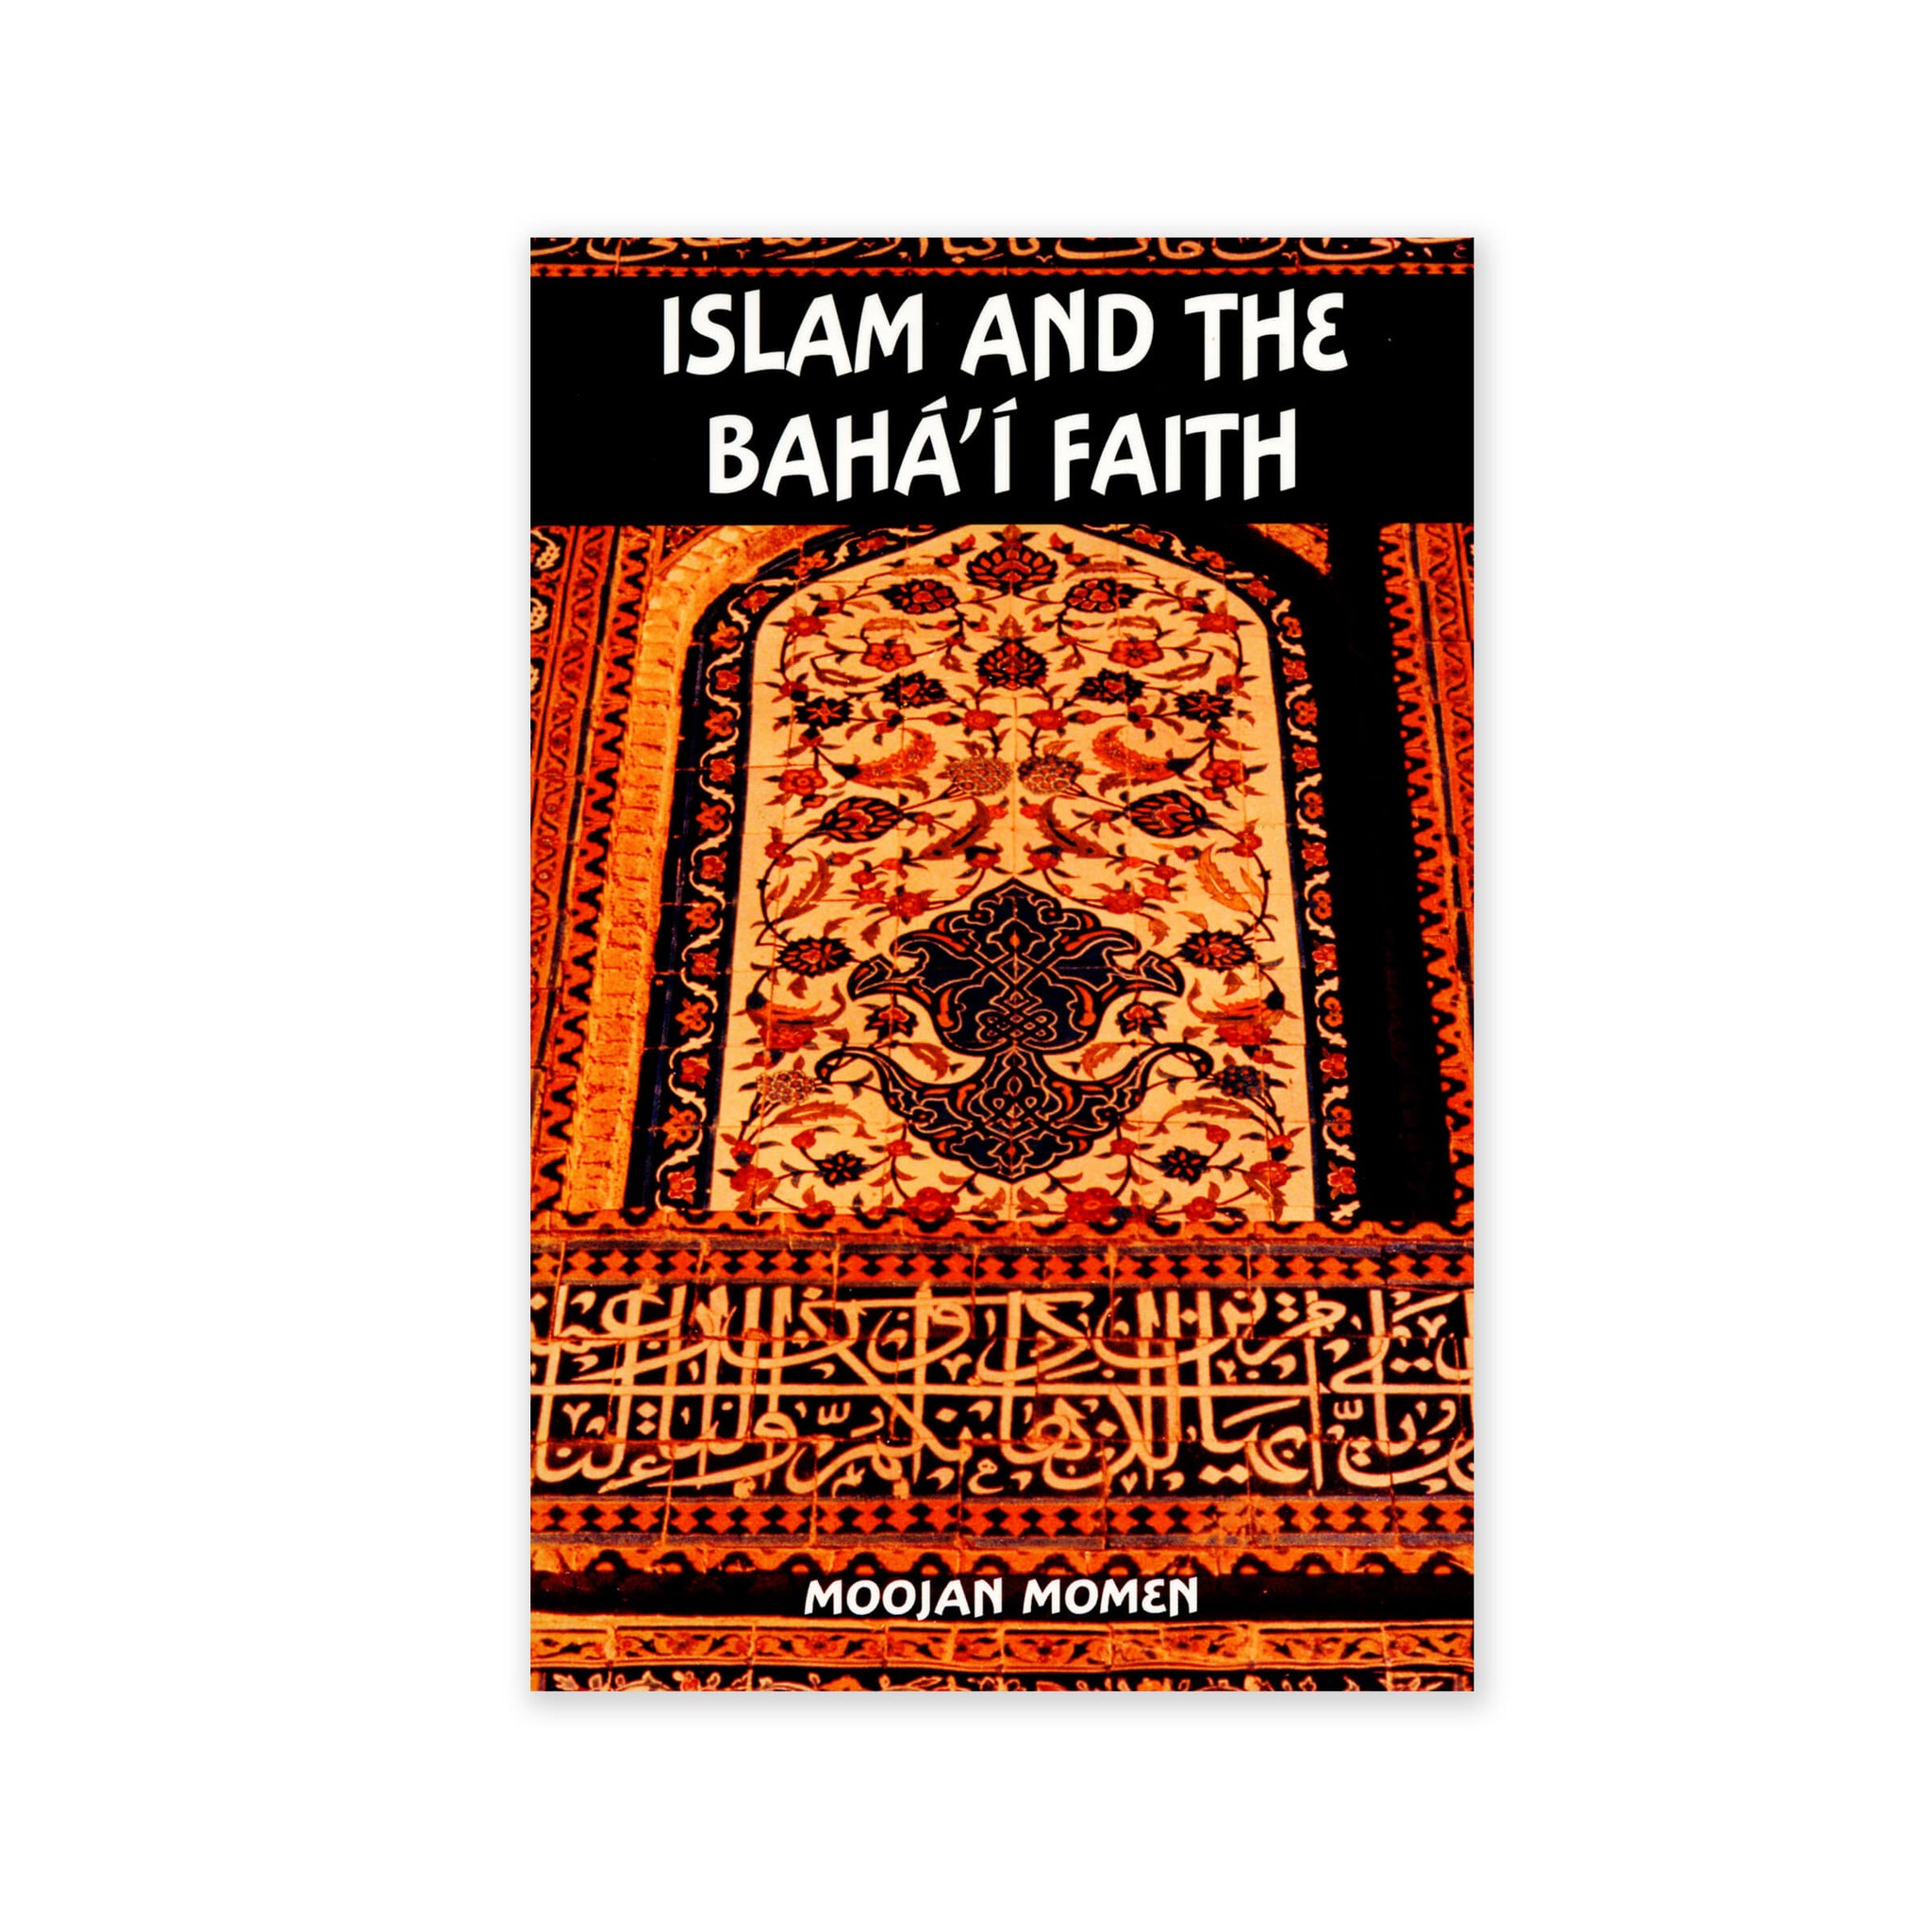 Islam and the Baha'i Faith - An Introduction to the Baha'i Faith for Muslims